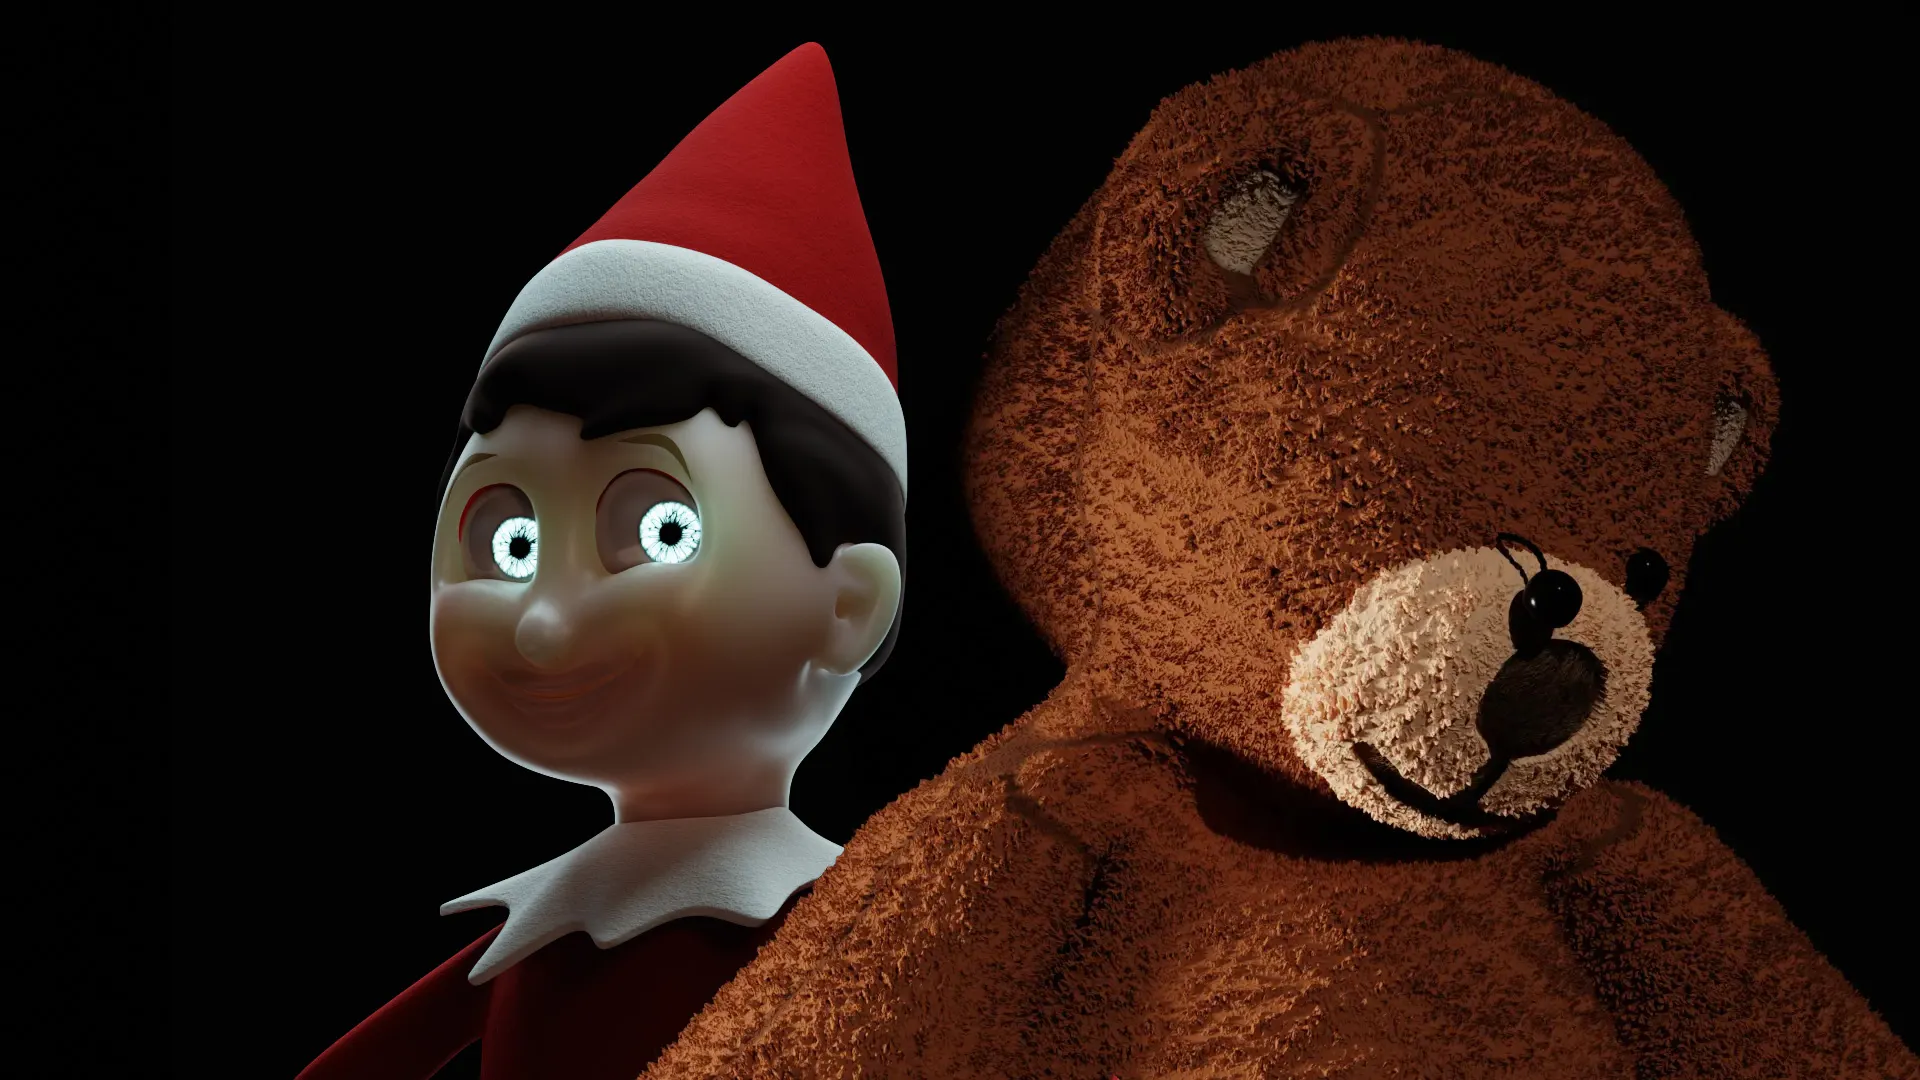 evil elf on a shelf and a dead teddy bear